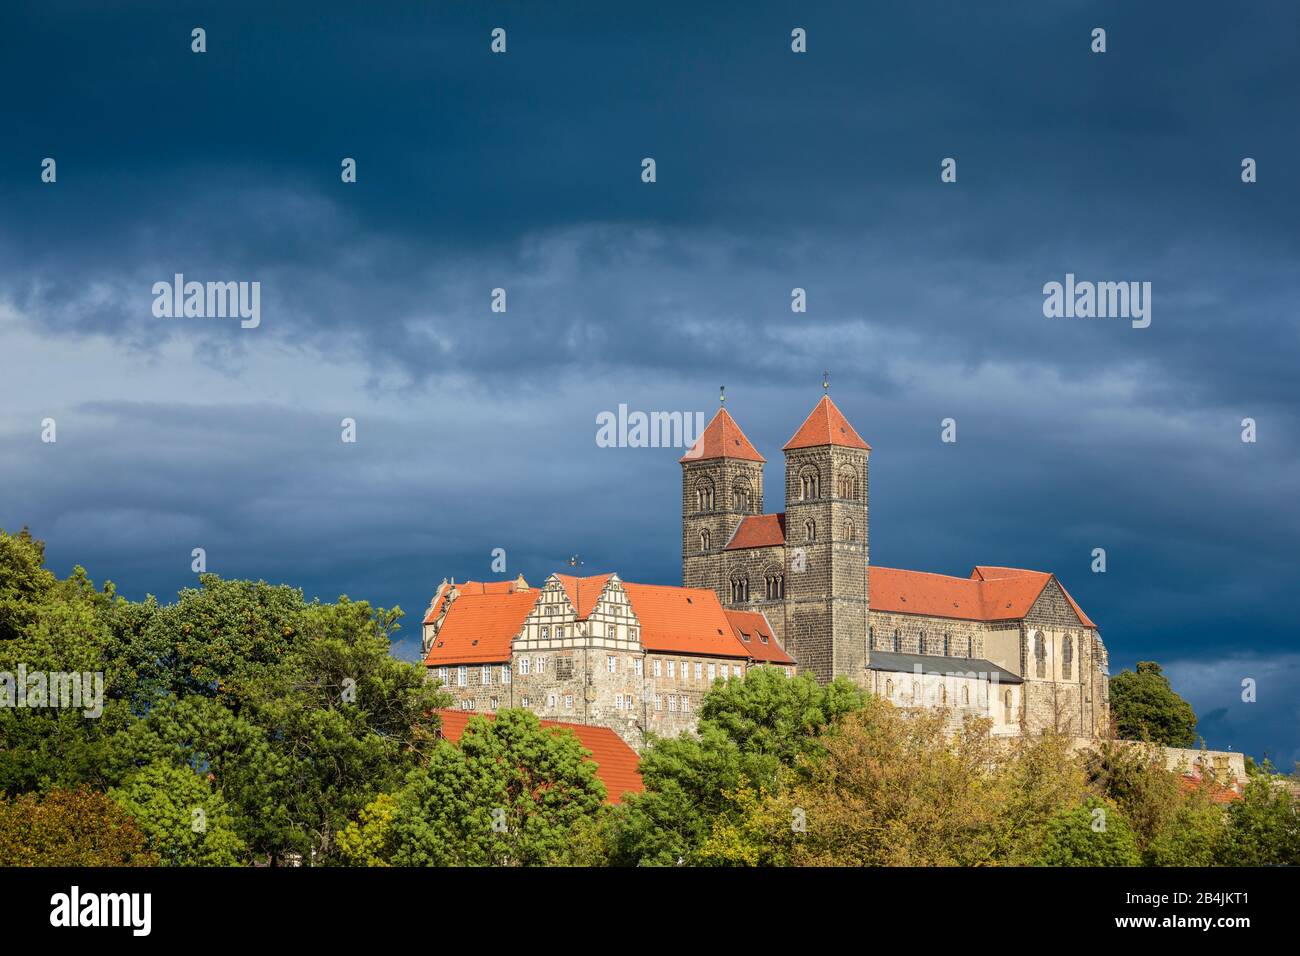 Europa, Deutschland, Sachsen-Anhalt, Quedlinburg. Vor einer Gewitterfront leuchtet der Dom in der Nachmittagssonne. Stock Photo